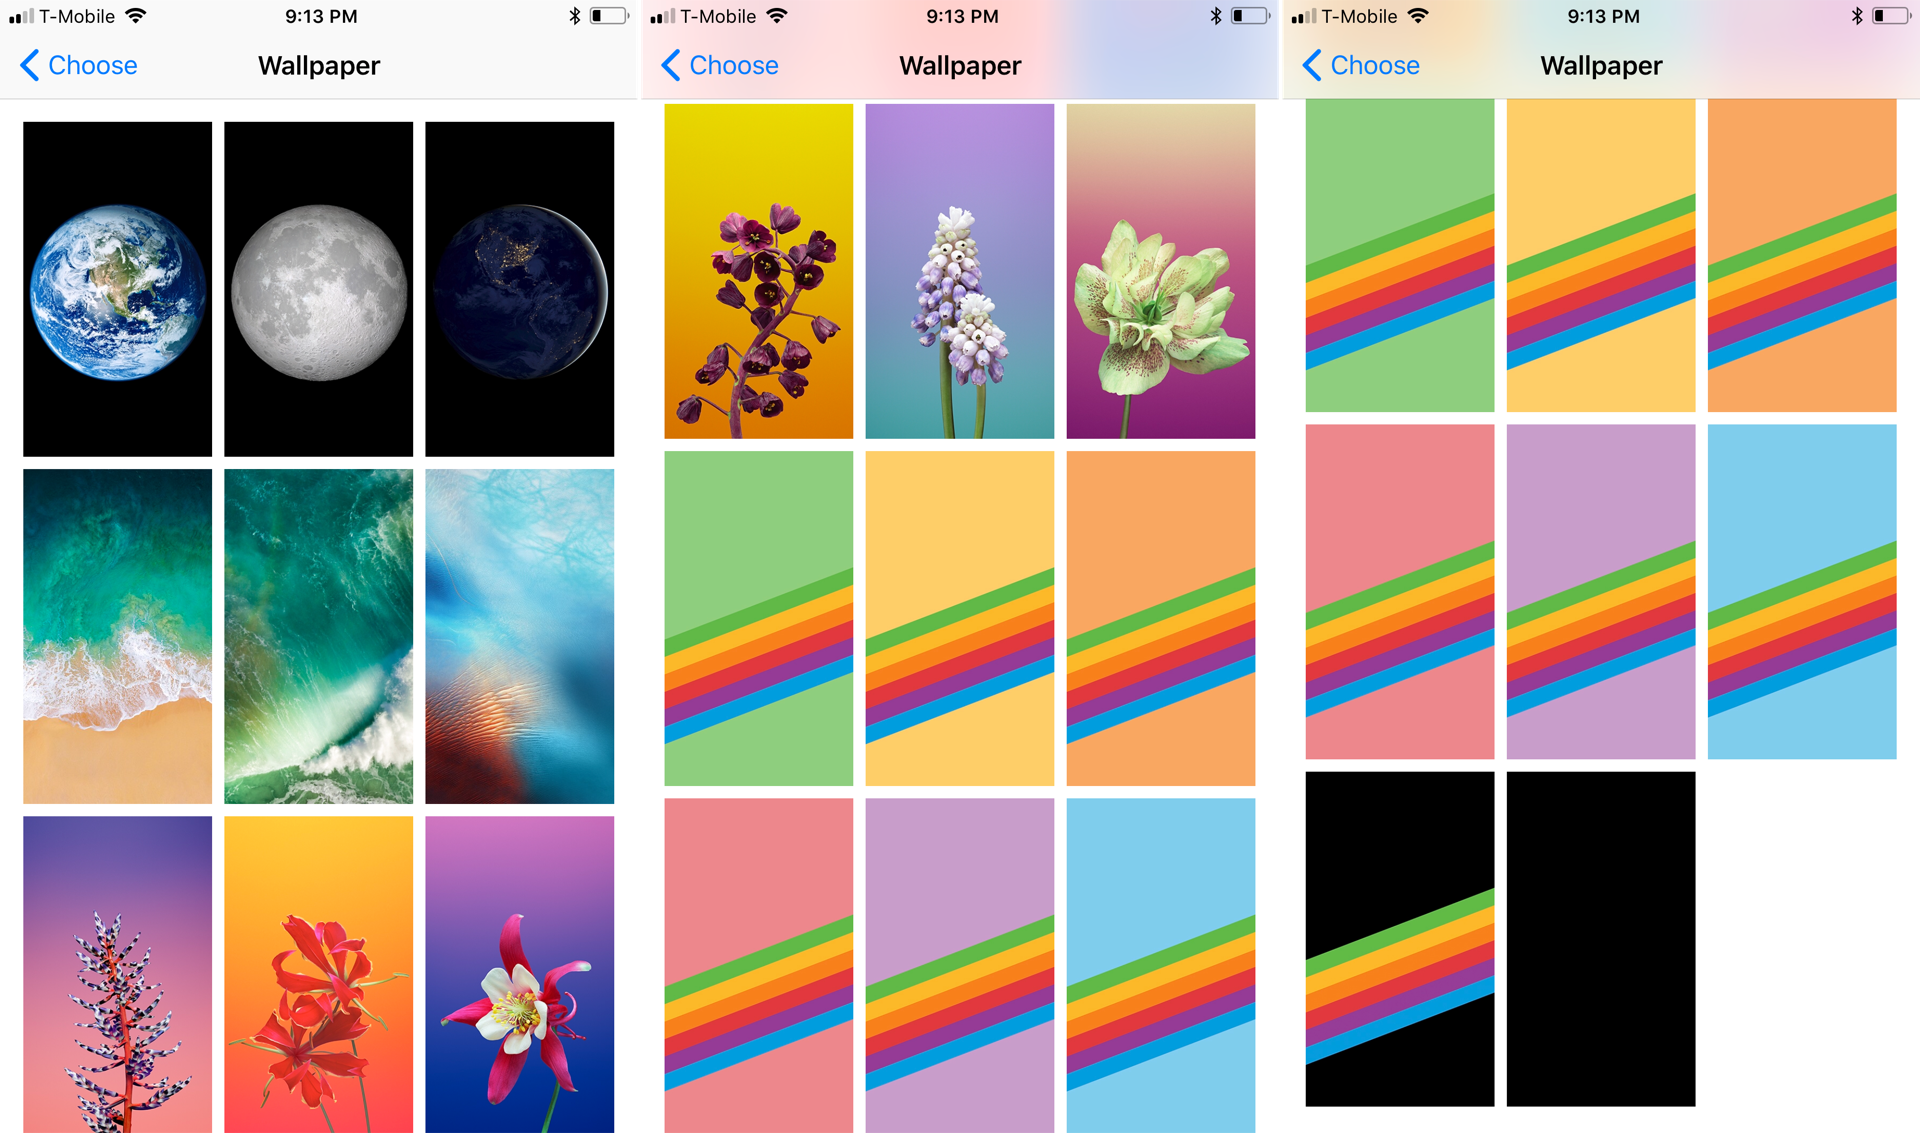 ｢iOS 11｣のGM版が流出 ｰ 17枚もの新しい壁紙が追加されている事が明らかに